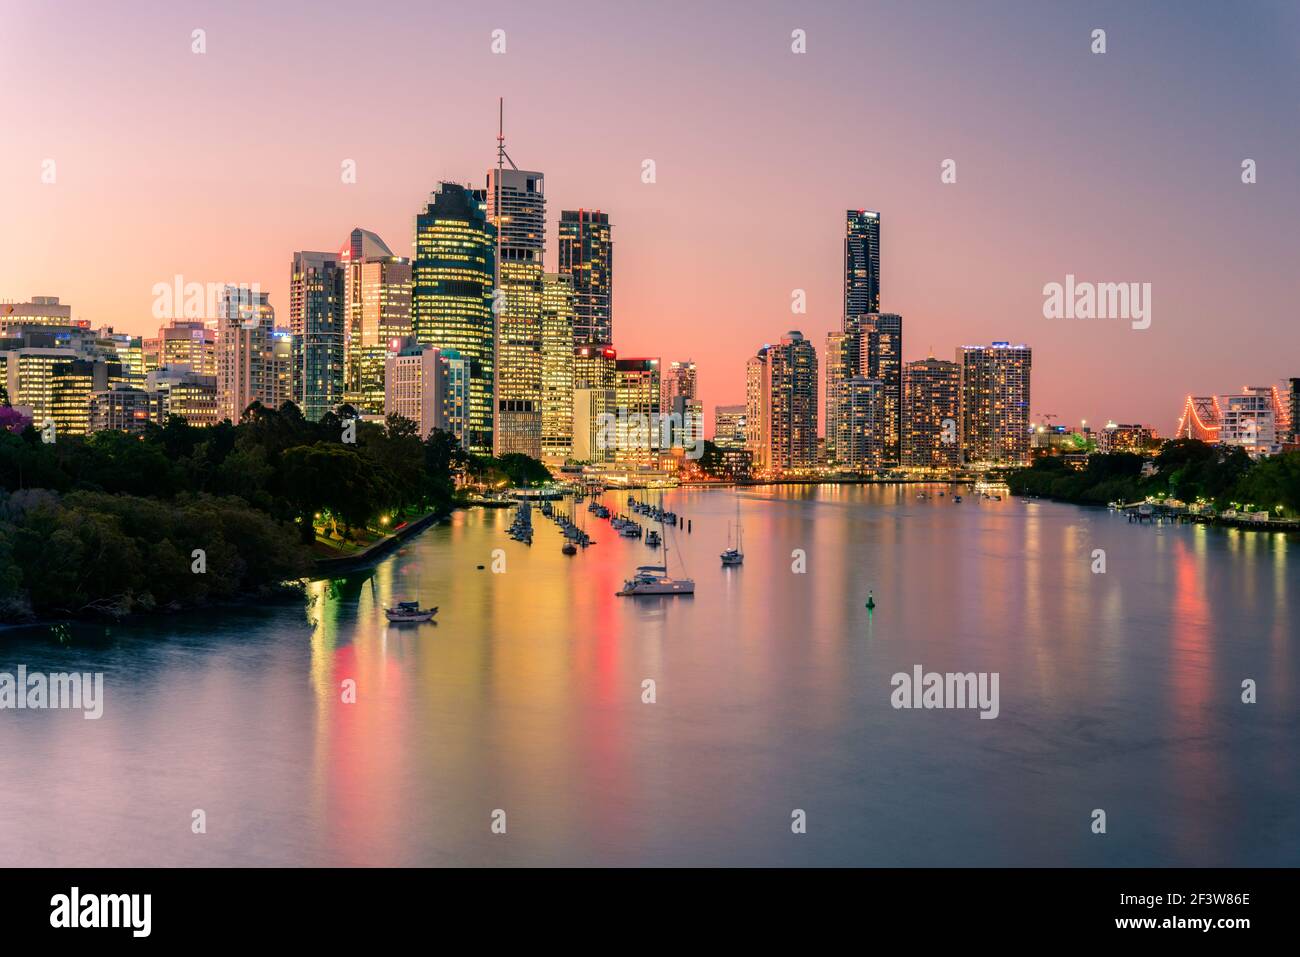 Les bâtiments de la ville de Brisbane et la rivière sont vus au coucher du soleil depuis Kangaroo point. Brisbane est la capitale de l'État du Queensland, en Australie. Banque D'Images